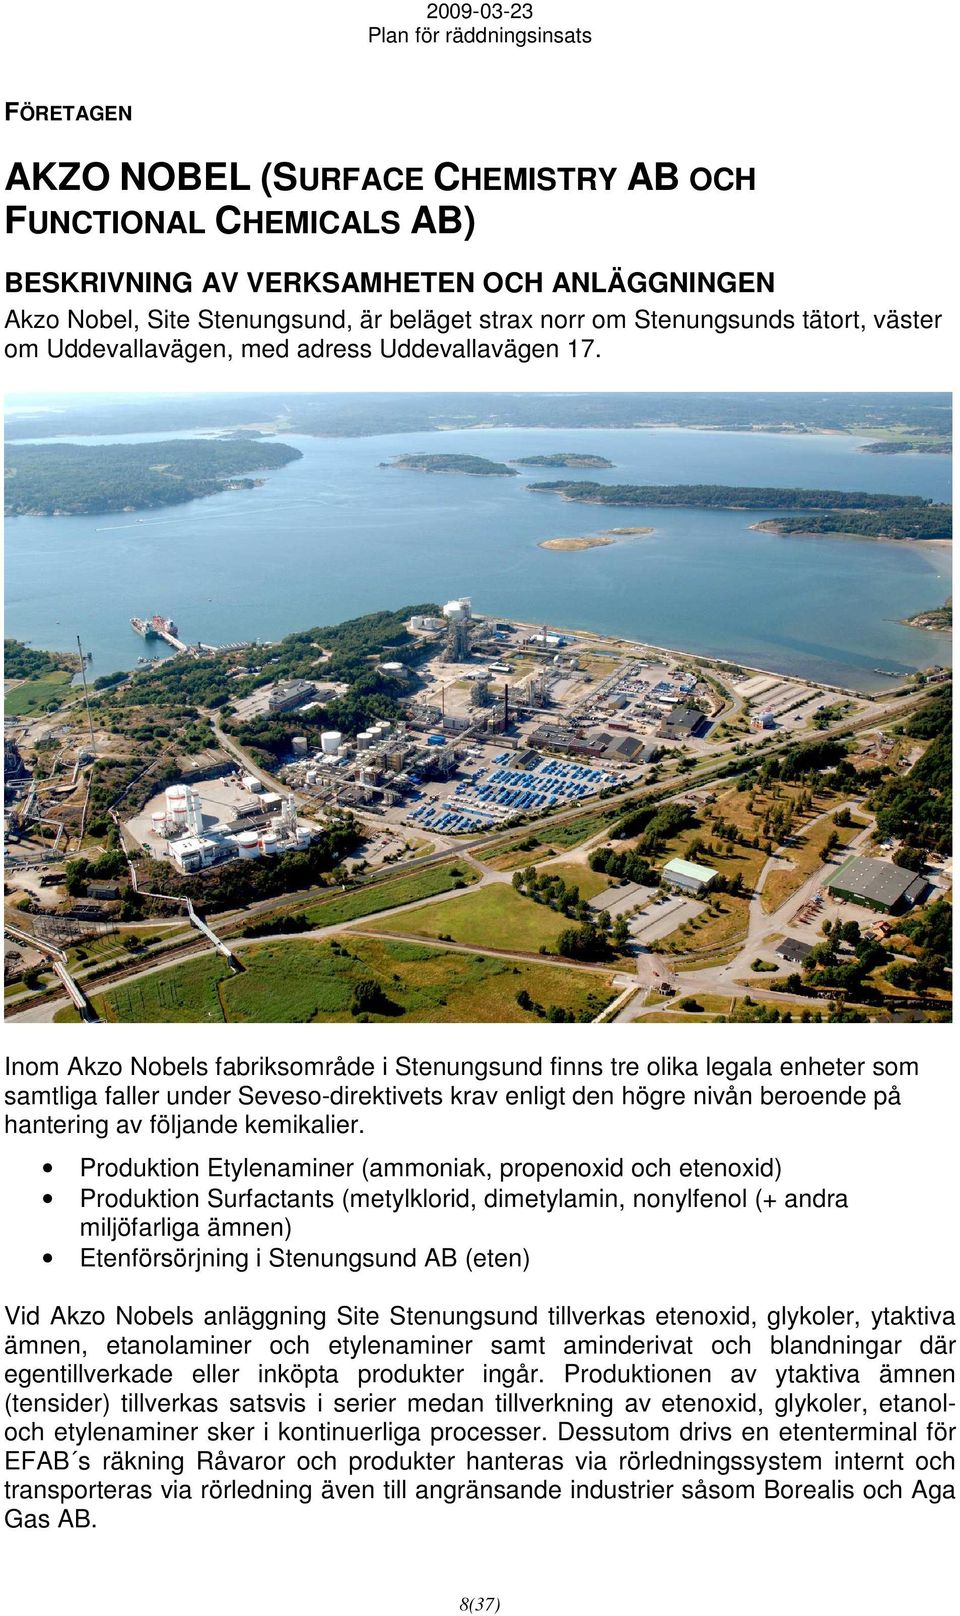 Inom Akzo Nobels fabriksområde i Stenungsund finns tre olika legala enheter som samtliga faller under Seveso-direktivets krav enligt den högre nivån beroende på hantering av följande kemikalier.